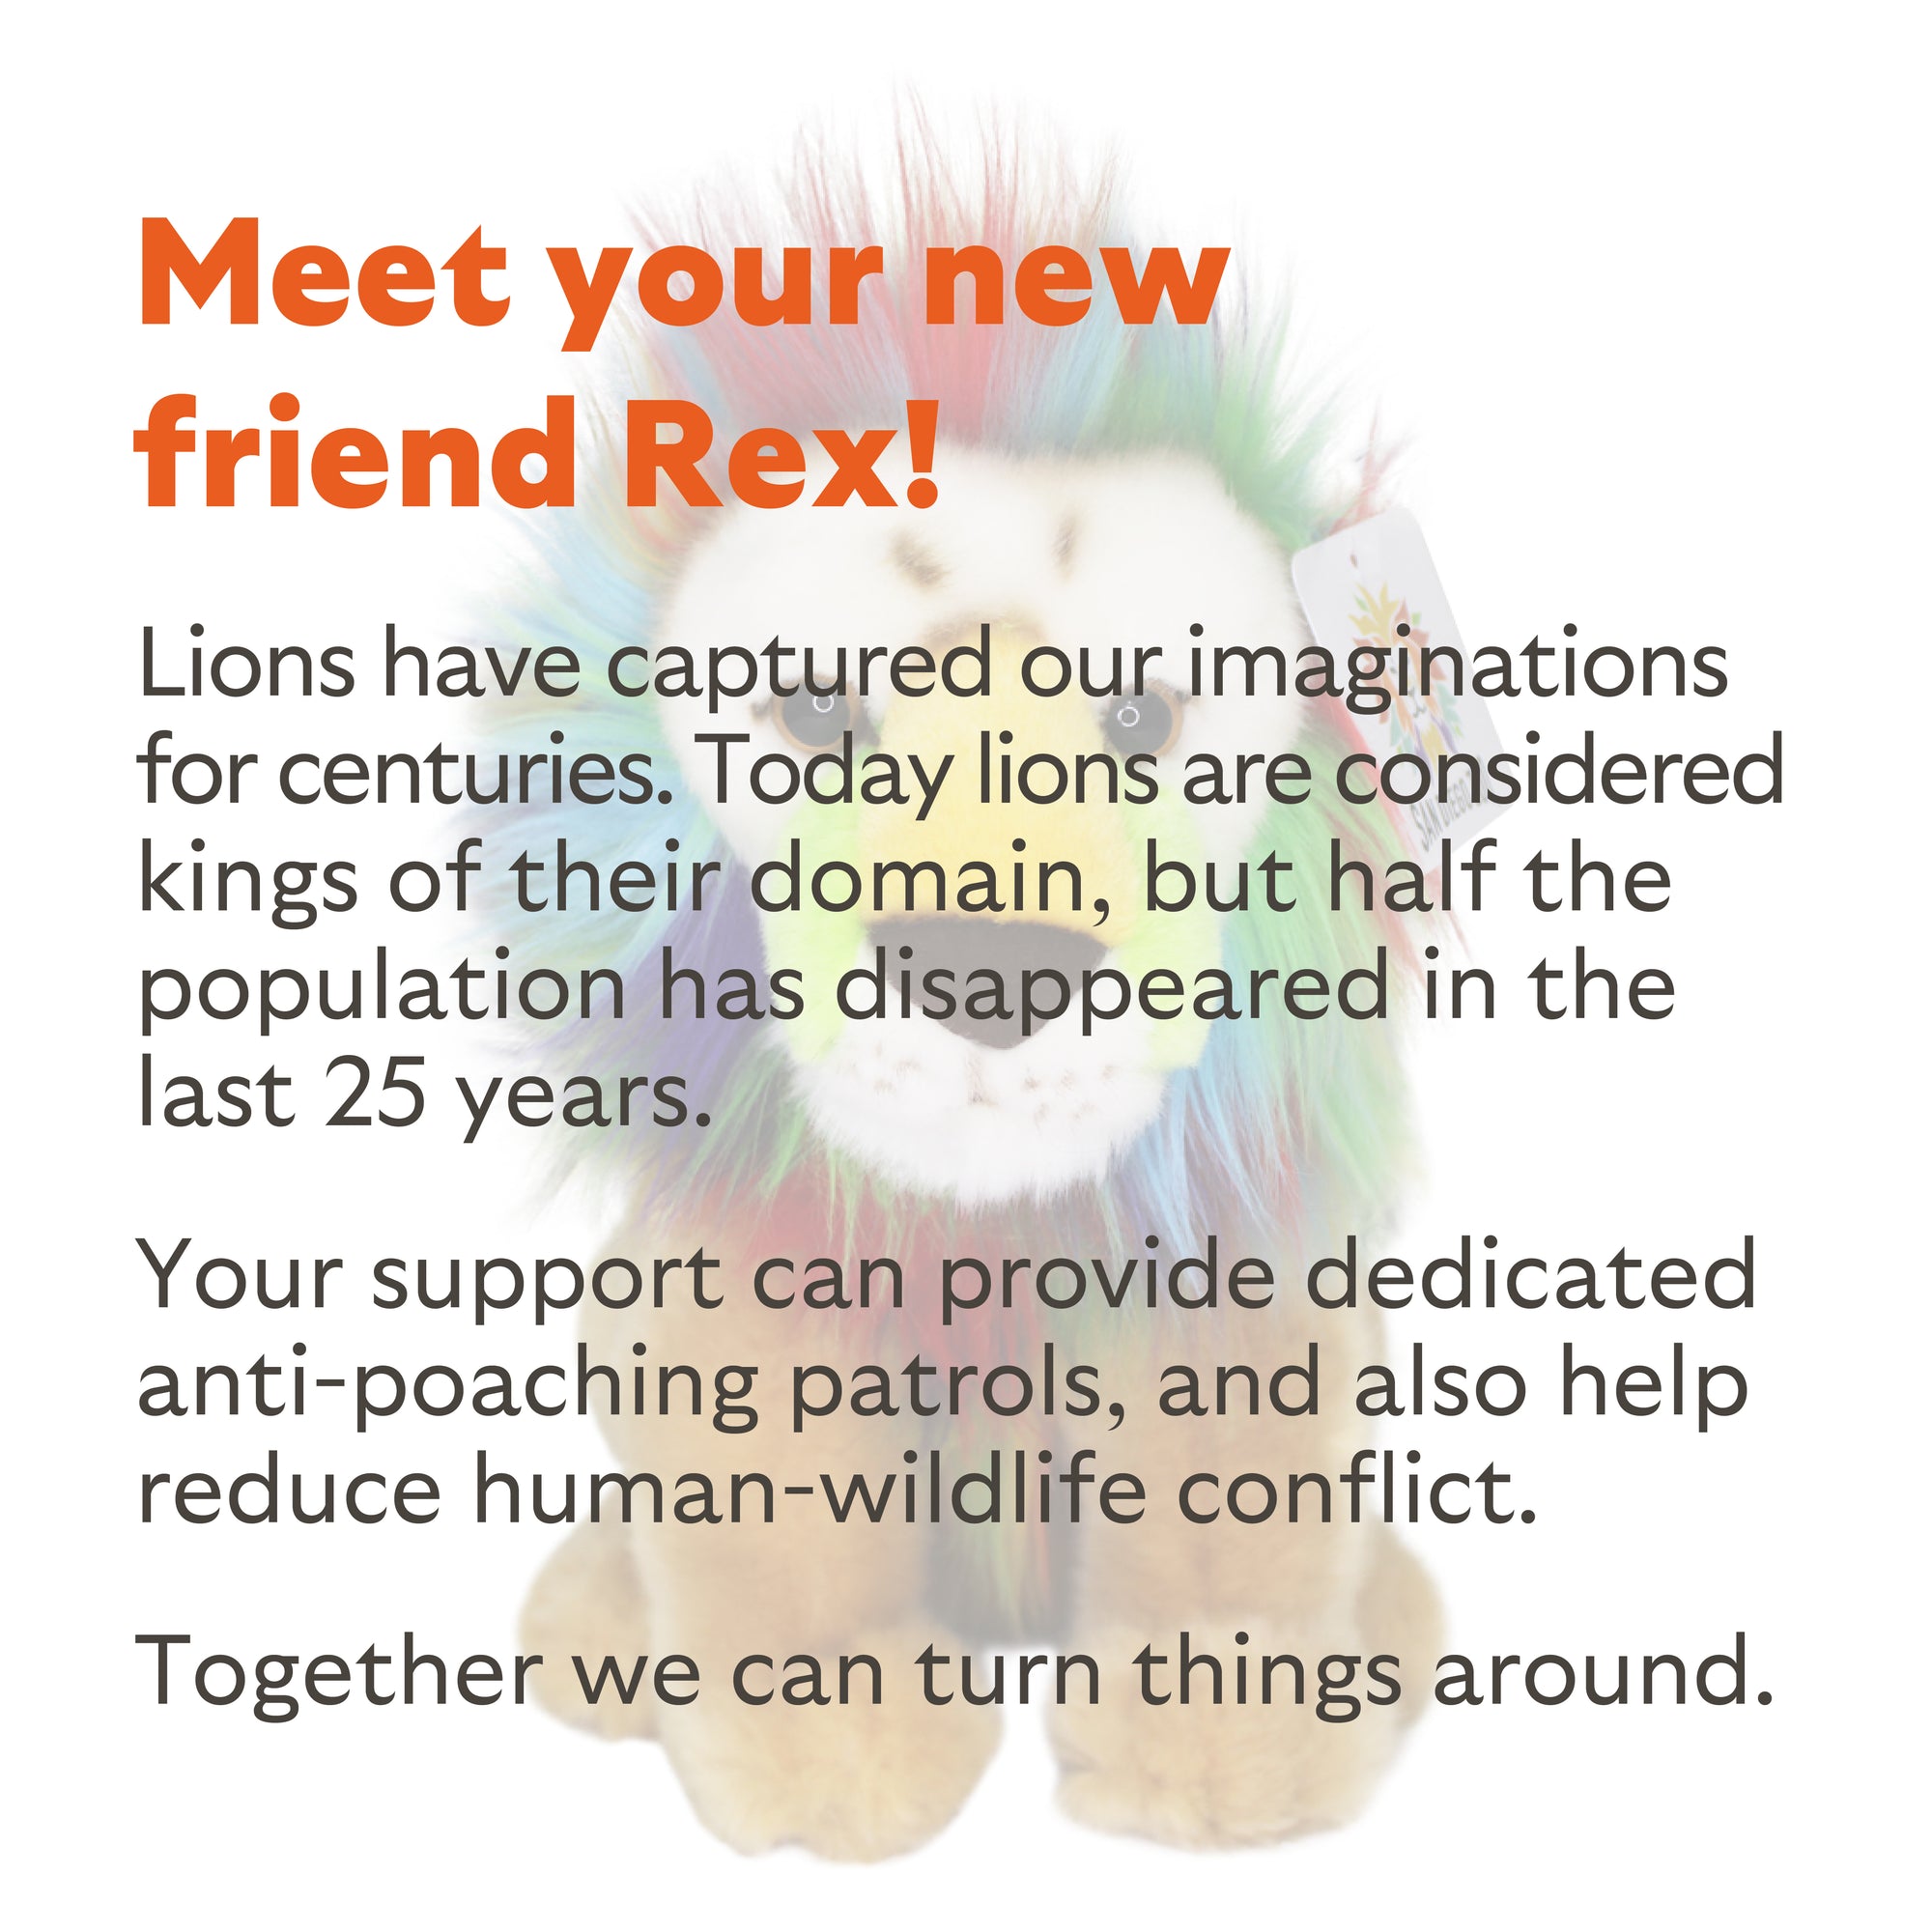 Rex the Colorful Lion Plush